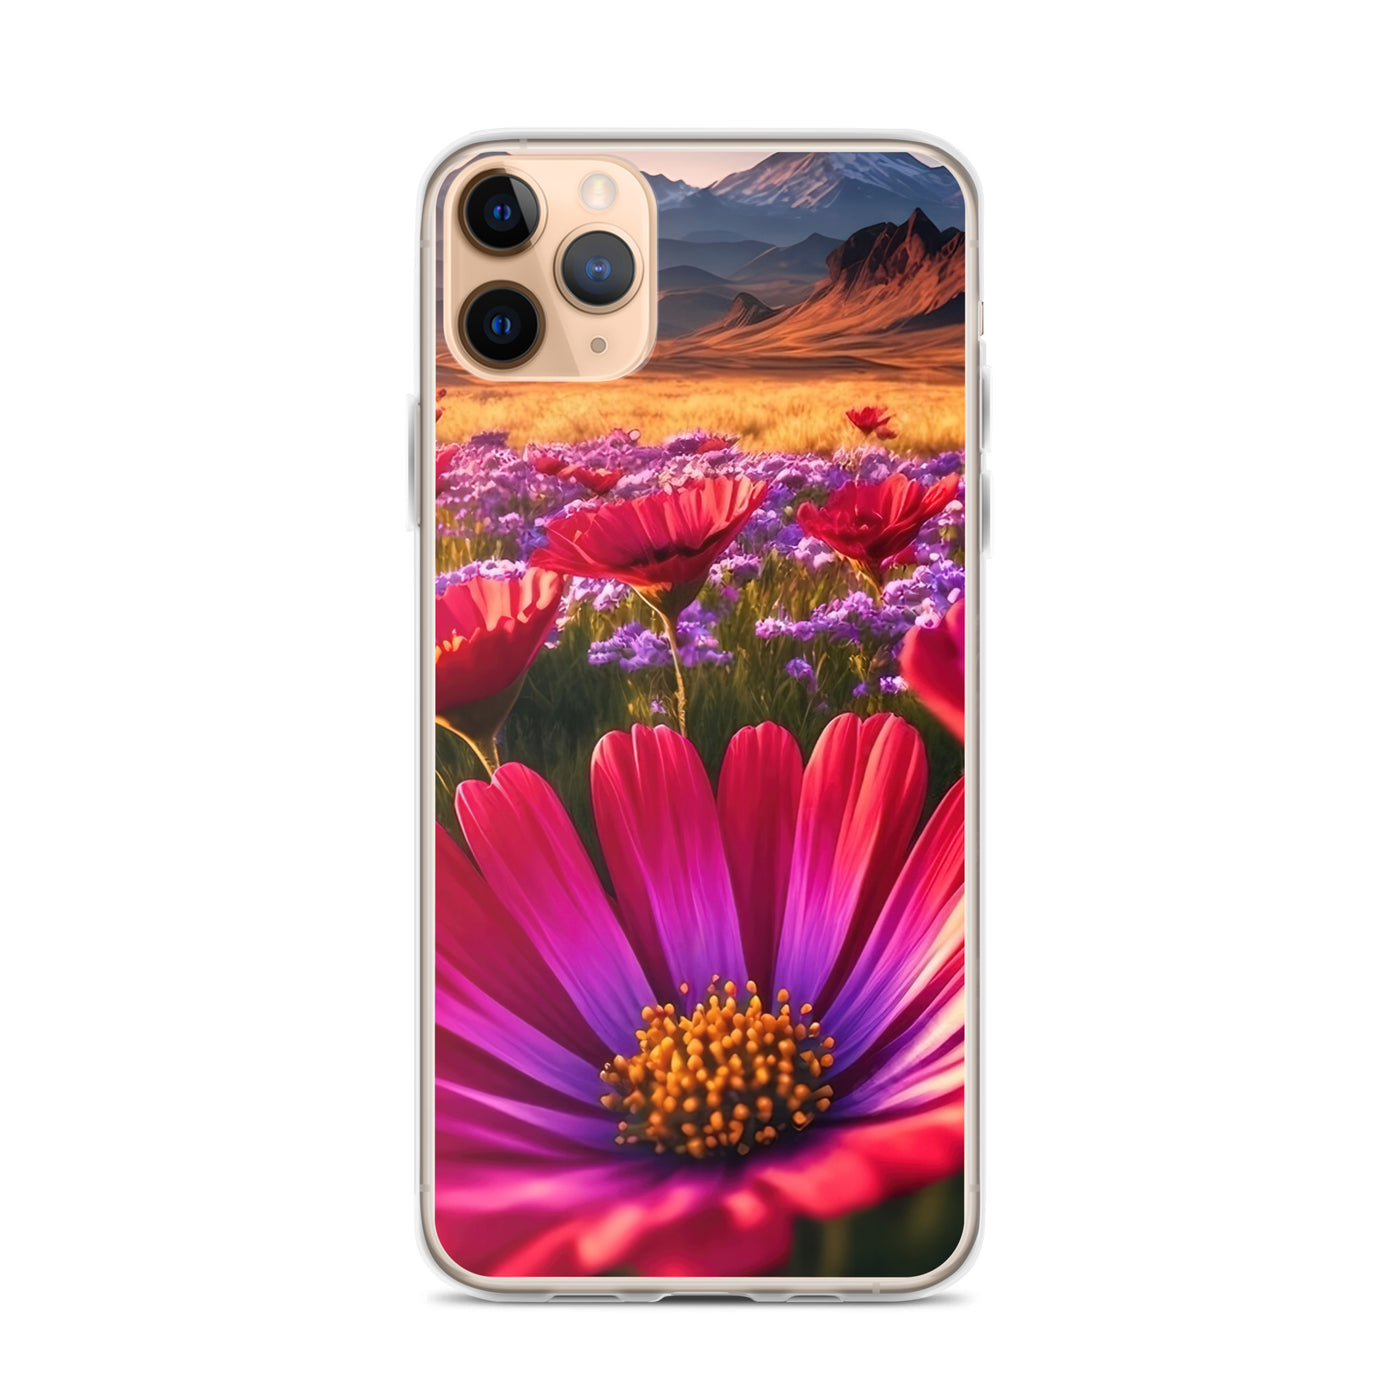 Wünderschöne Blumen und Berge im Hintergrund - iPhone Schutzhülle (durchsichtig) berge xxx iPhone 11 Pro Max